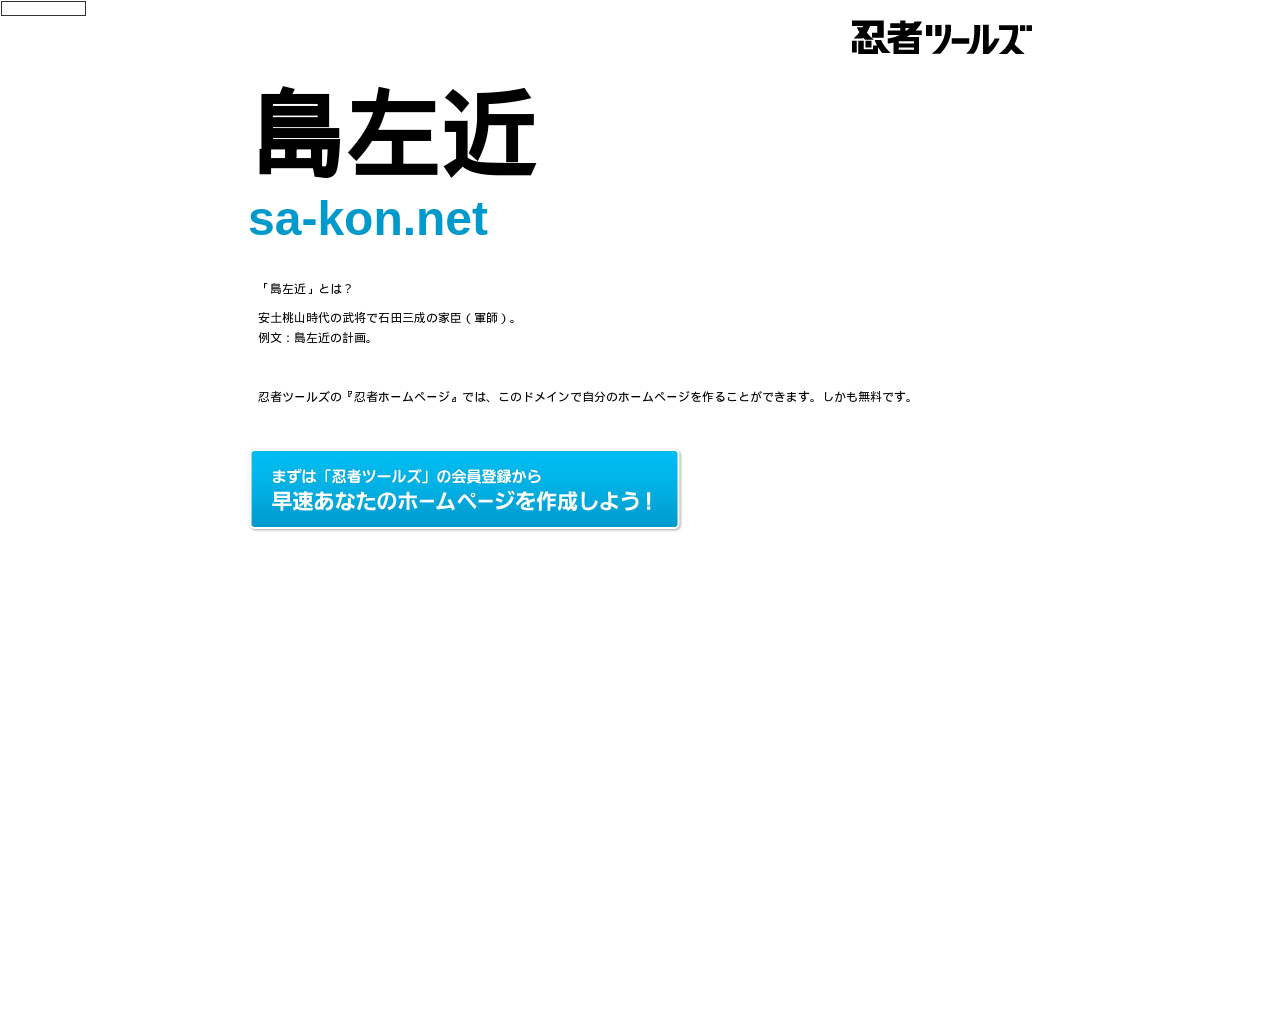 sa-kon.net